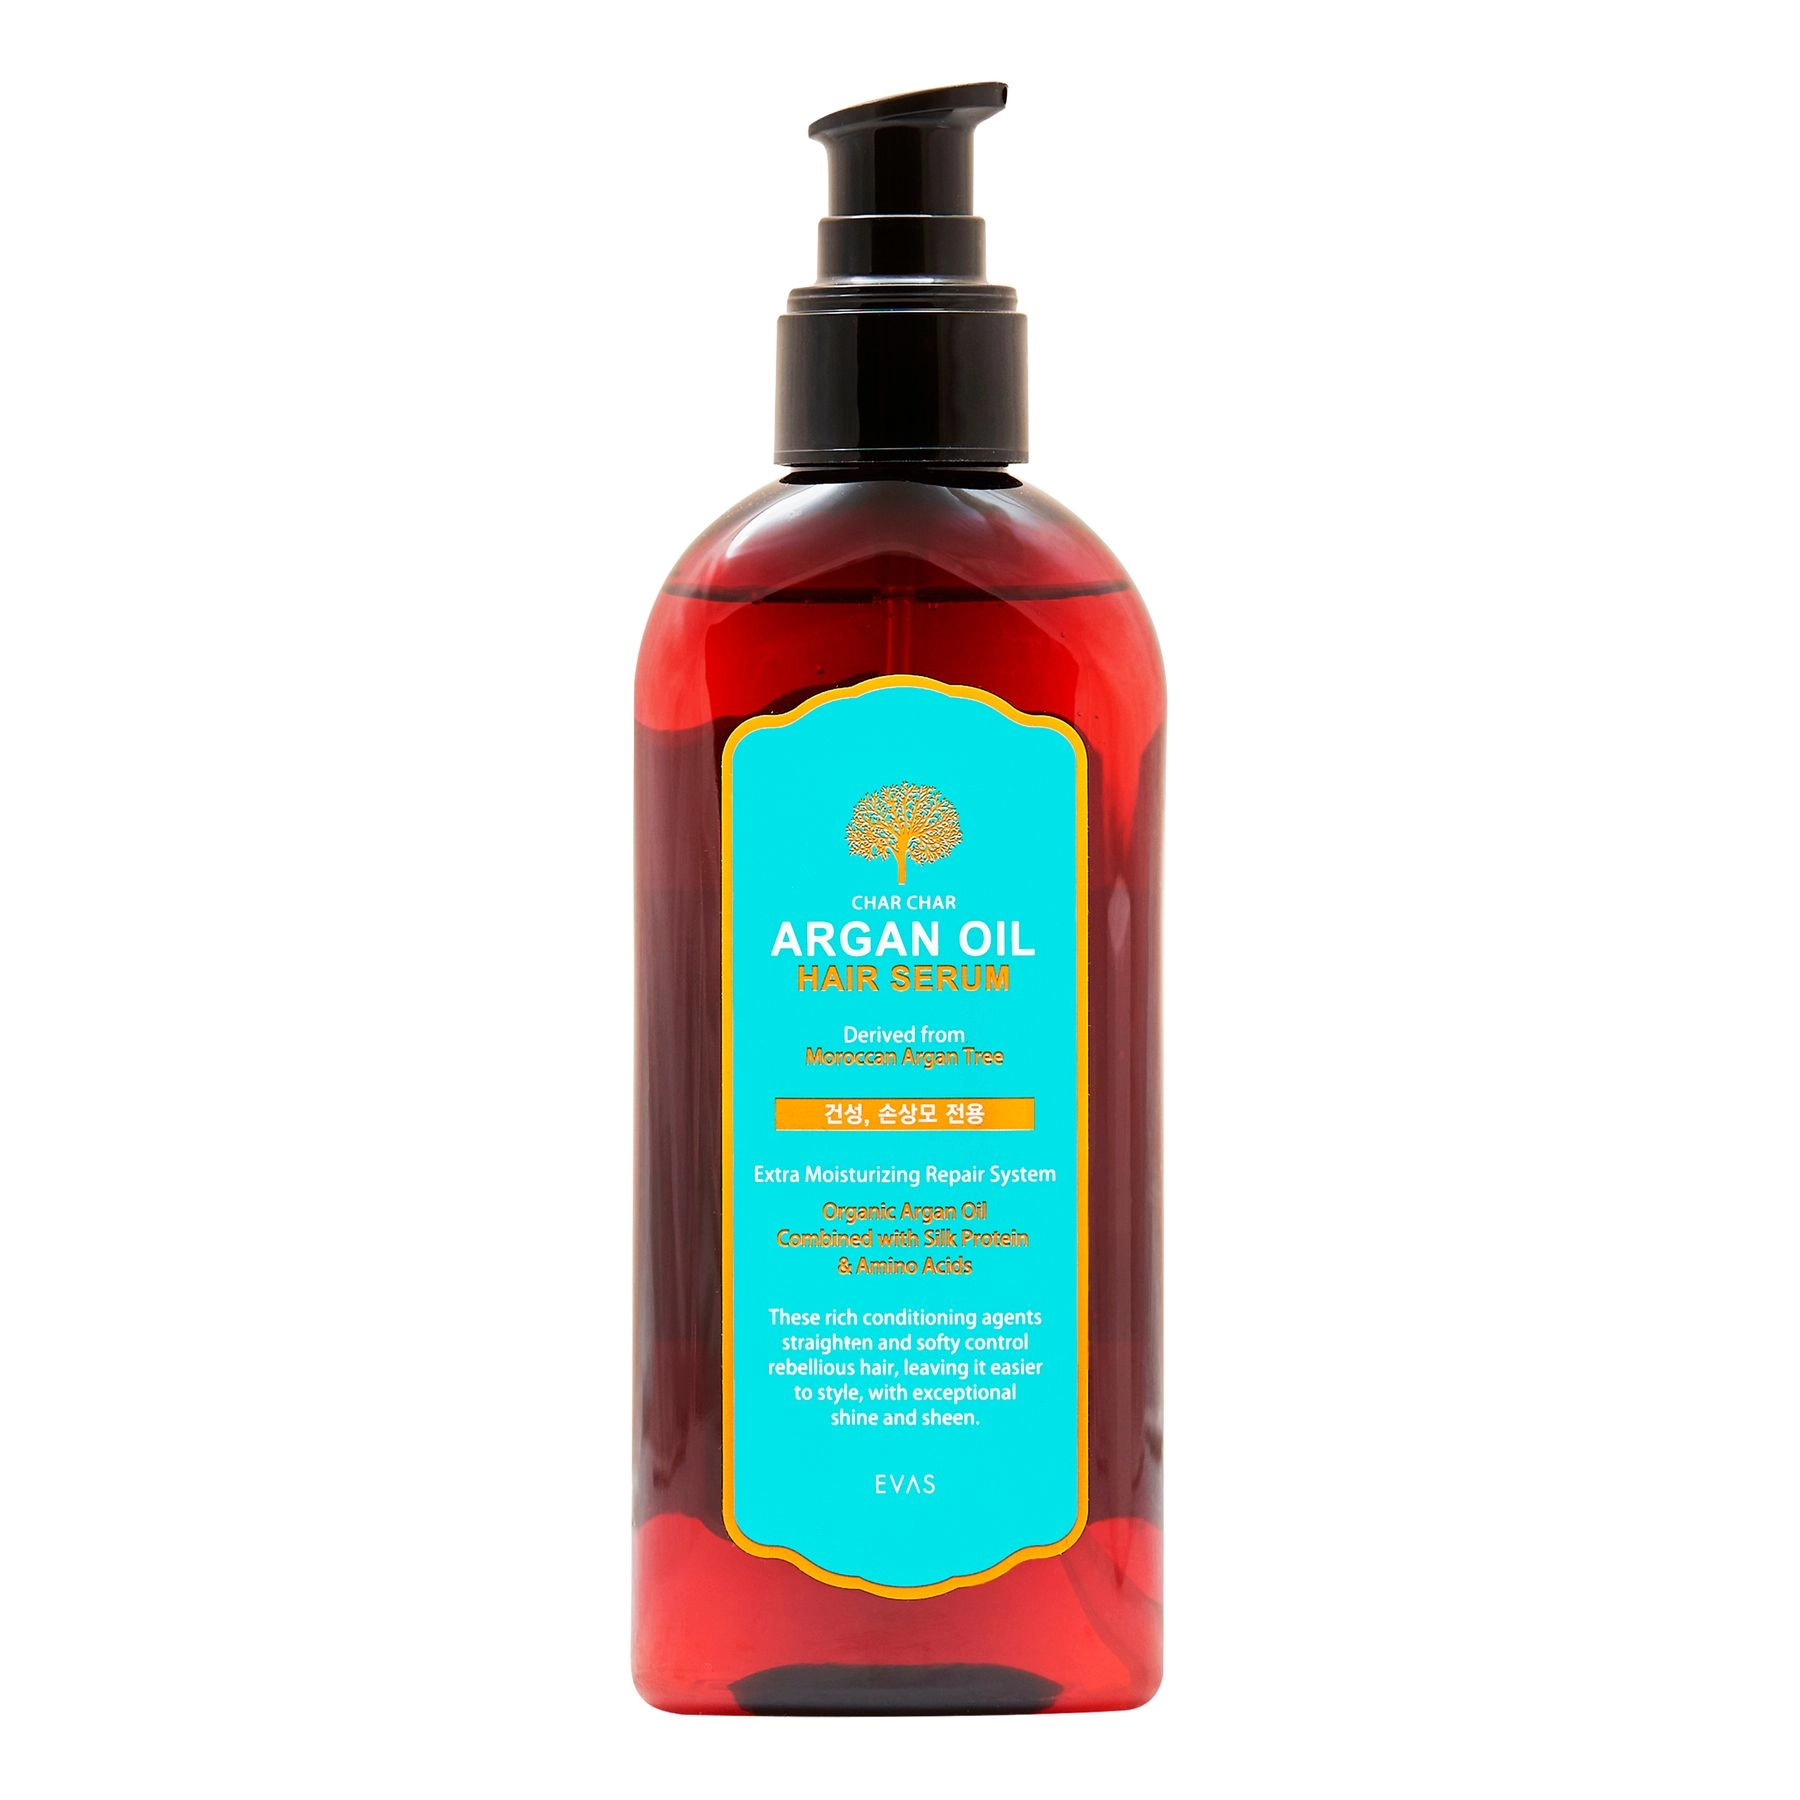 Сыворотка для волос с аргановым маслом - Char Char Argan Oil Hair Serum, 200 мл - фото N1